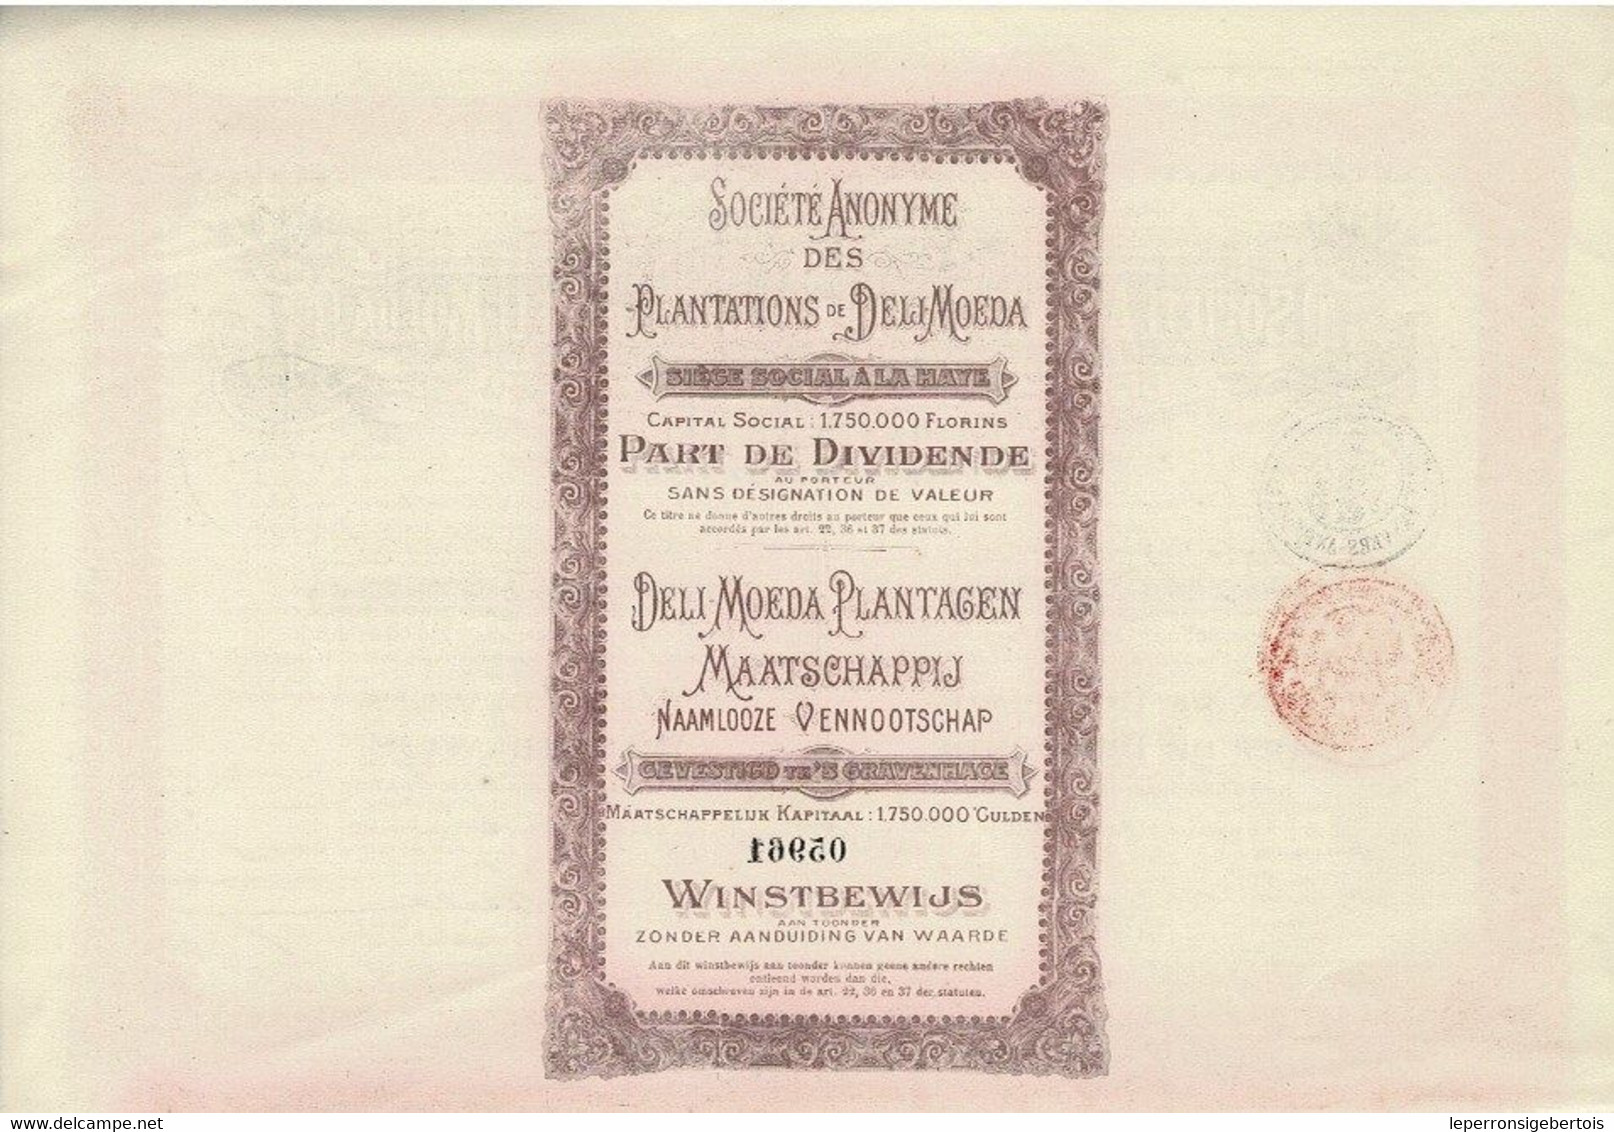 Titre De 1910 - Société Anonyme Des Plantations De Deli-Moeda - Deli-Moeda Plantagen Maatschappij - - Asie